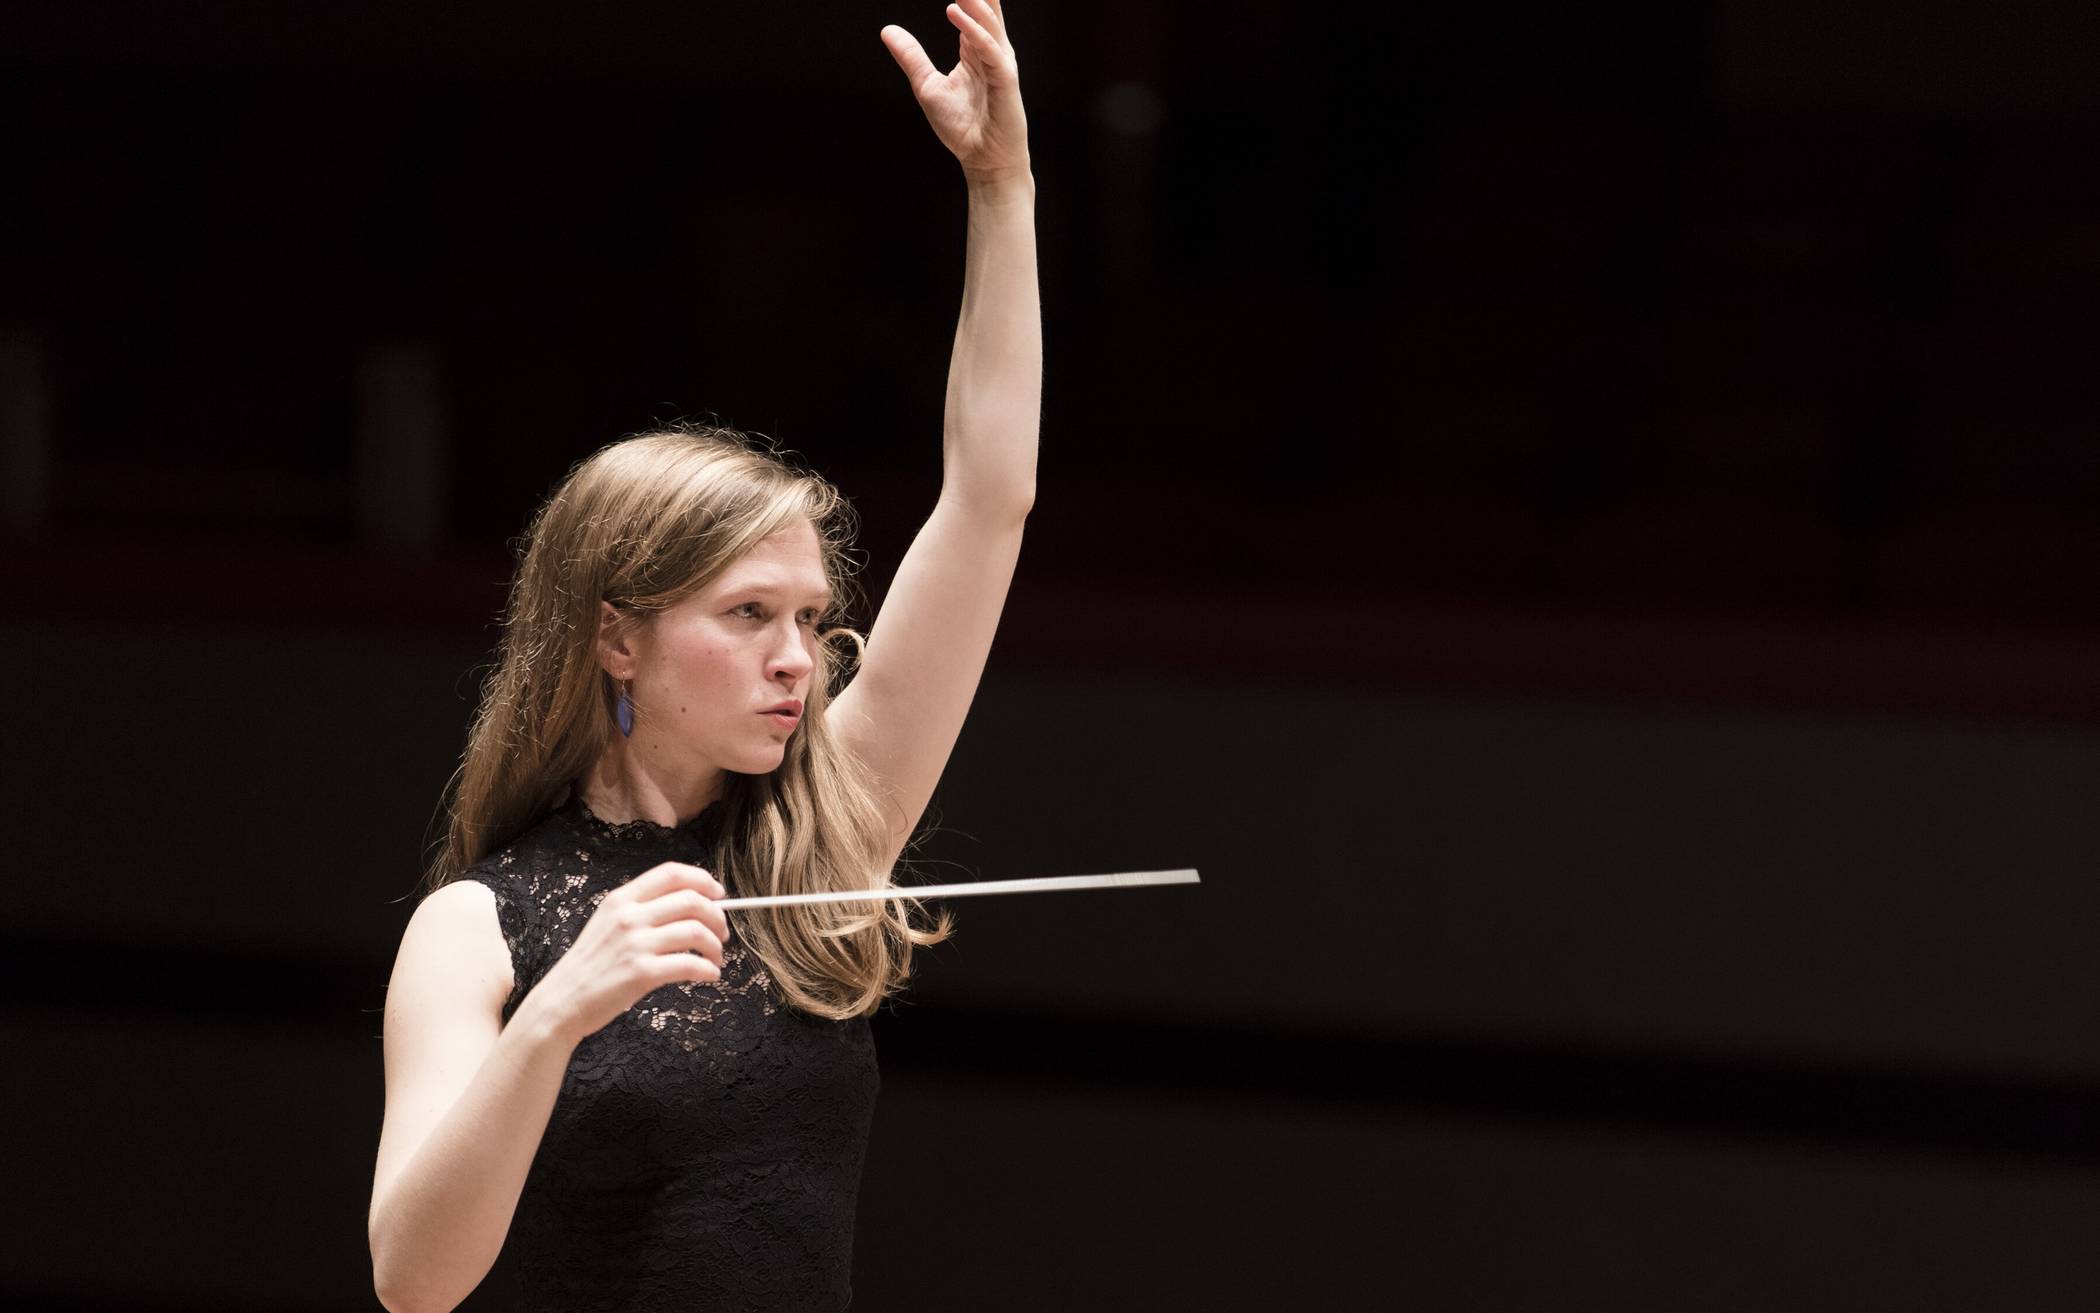  Mirga Granzinyte-Tyla, die Leiterin des City of Birmingham Symphony Orchestra, ist momentan die weltweit gefeiertste Dirigentin. 